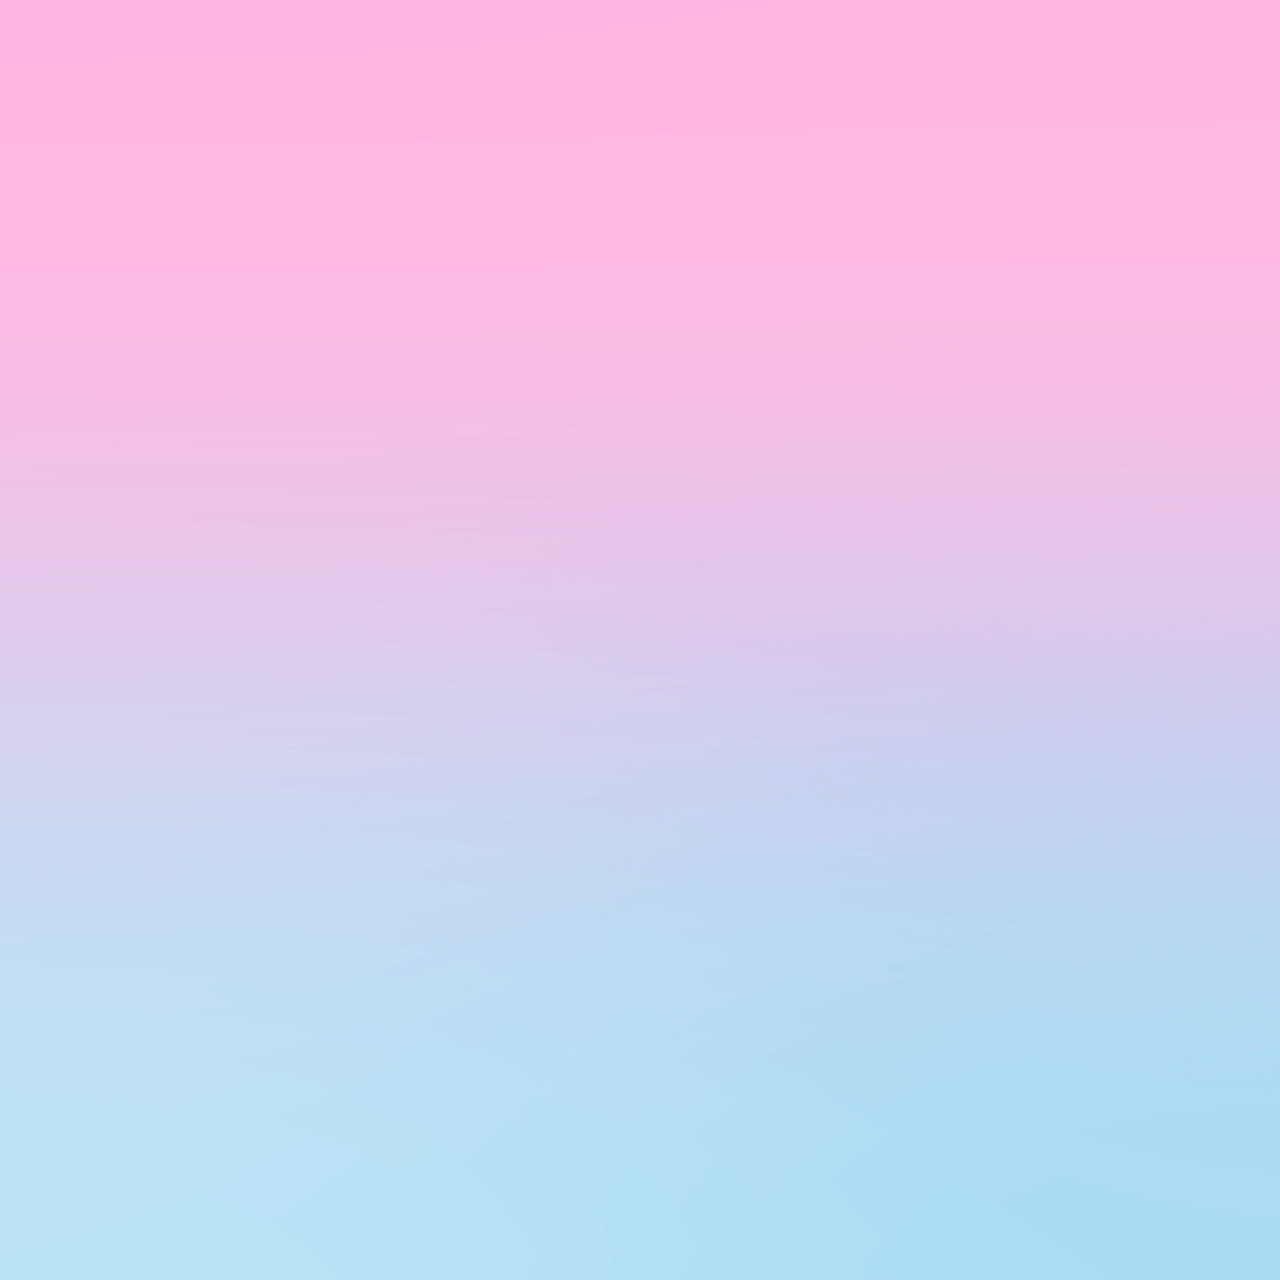 Thiết kế độc đáo Ombre background pink and blue Cho phép bạn tạo nên những bức ảnh ấn tượng